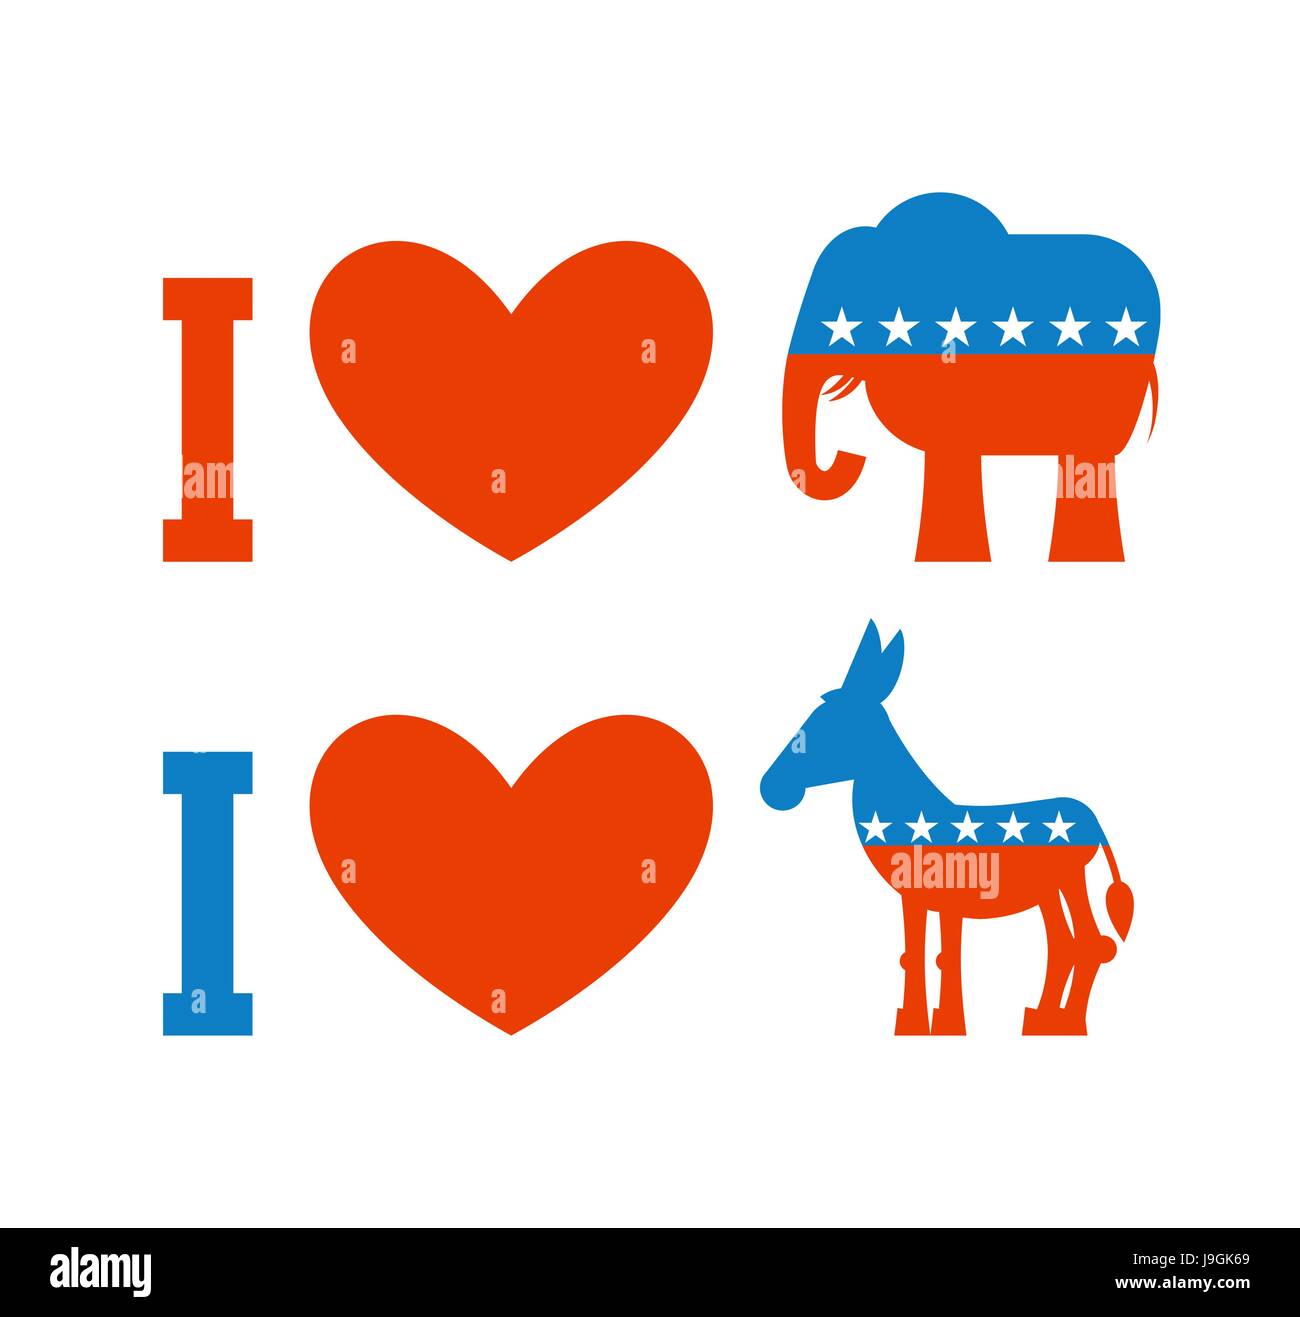 Ich liebe Demokrat. Ich mag Republikaner. Symbol des Herzens, Esel und Elefanten. Plakat für die Wahlen in den USA. Politische Debatte in den USA. Patriotische Emblem U Stock Vektor